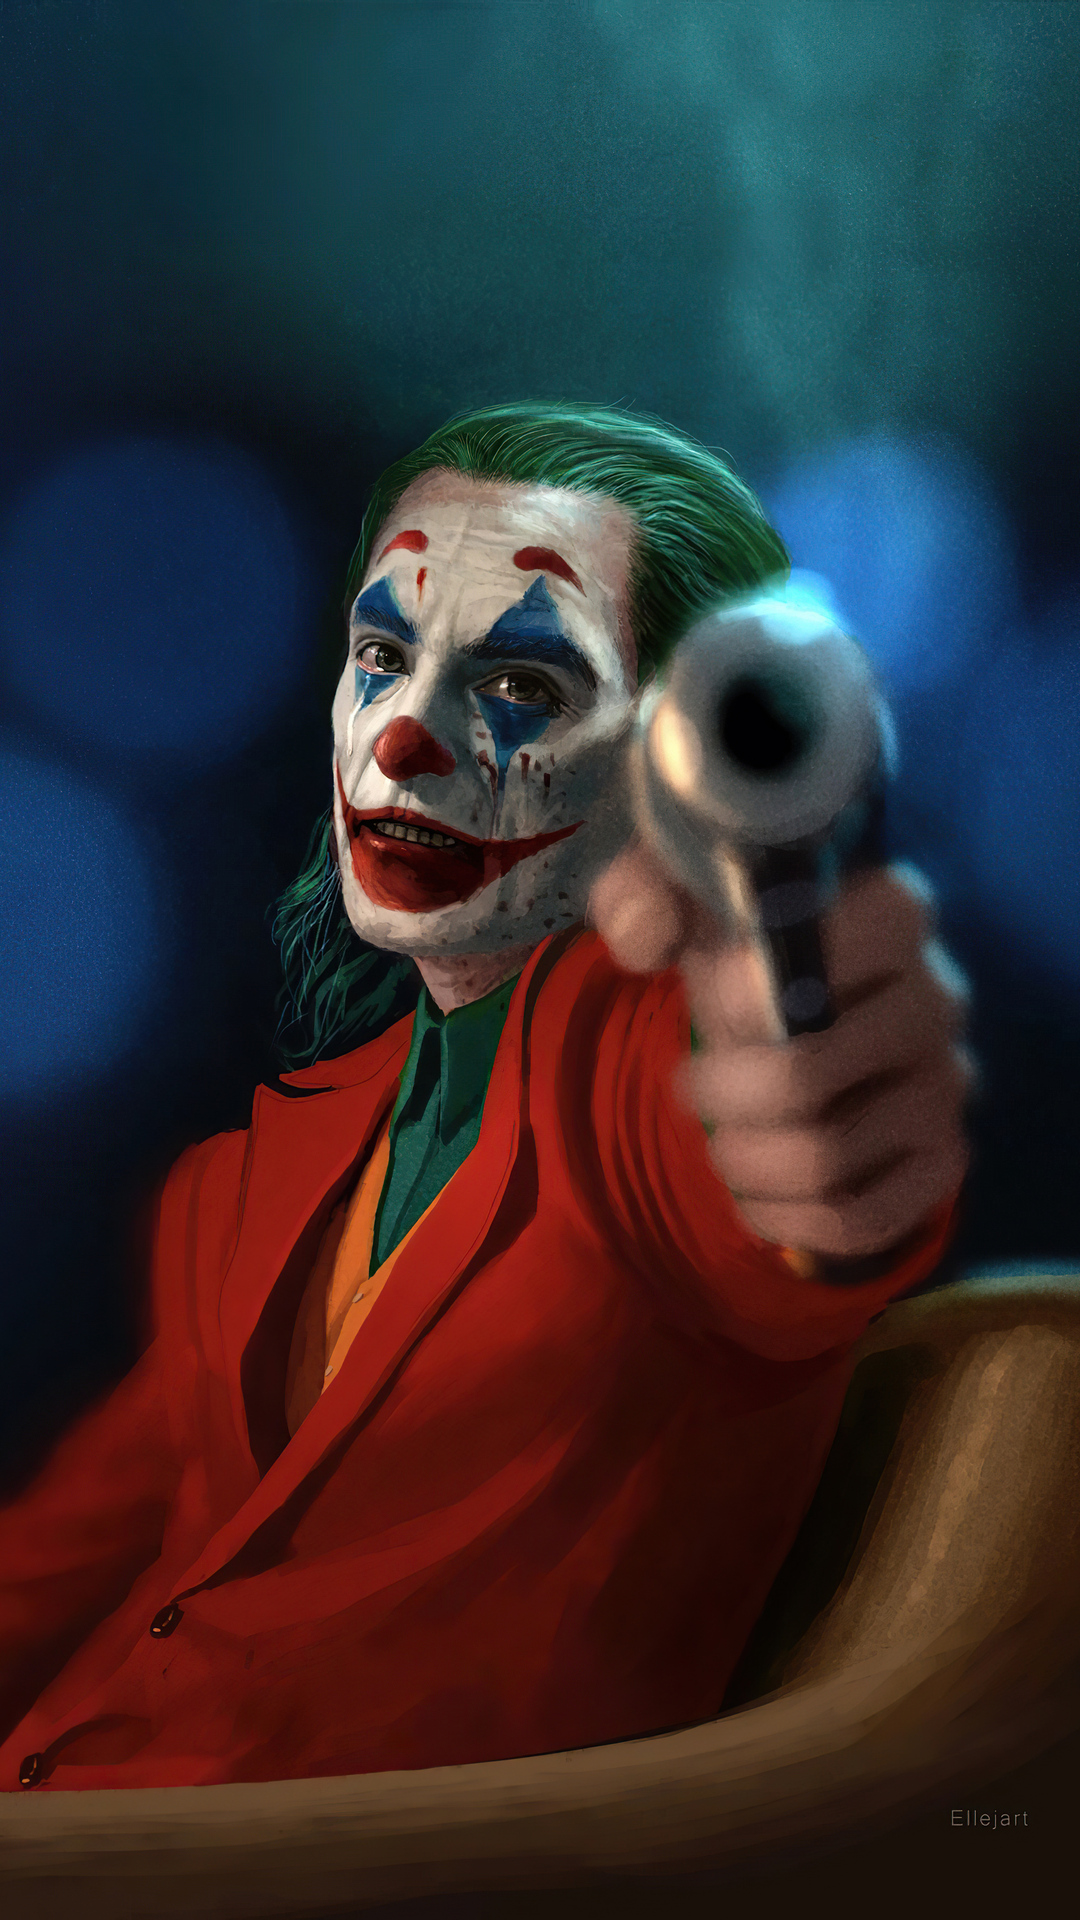 Mời bạn khám phá hình ảnh đầy ám ảnh và bí ẩn của Joker, kẻ phản diện kinh điển trong truyện tranh DC.